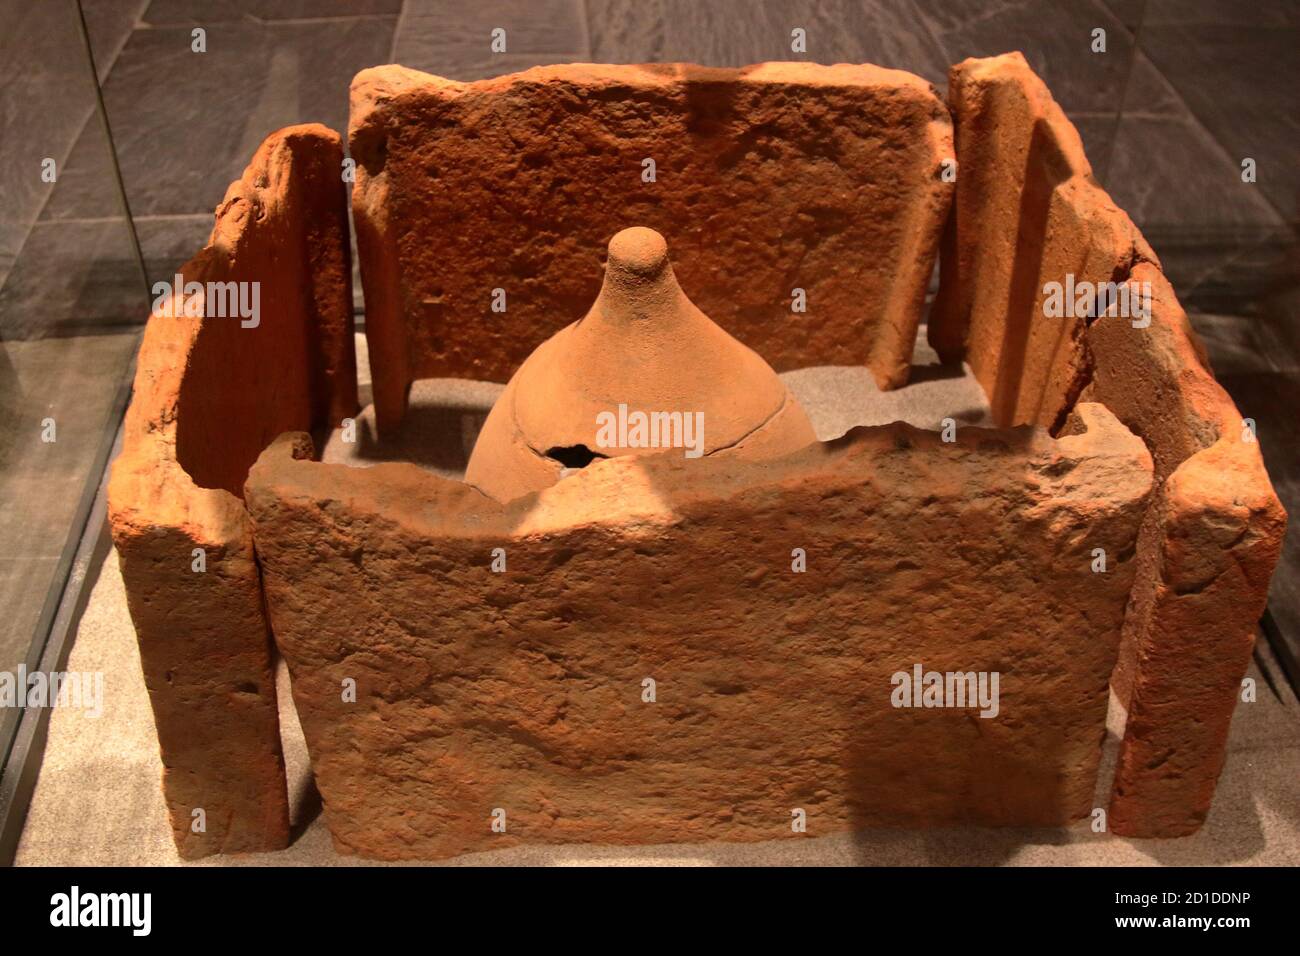 Archäologisches Museum von LaSPEZIA, Italien - Sommer 2020: Ton und Ziegel verbrannt Grab, ersten Jahrhundert v. Chr.. Stockfoto